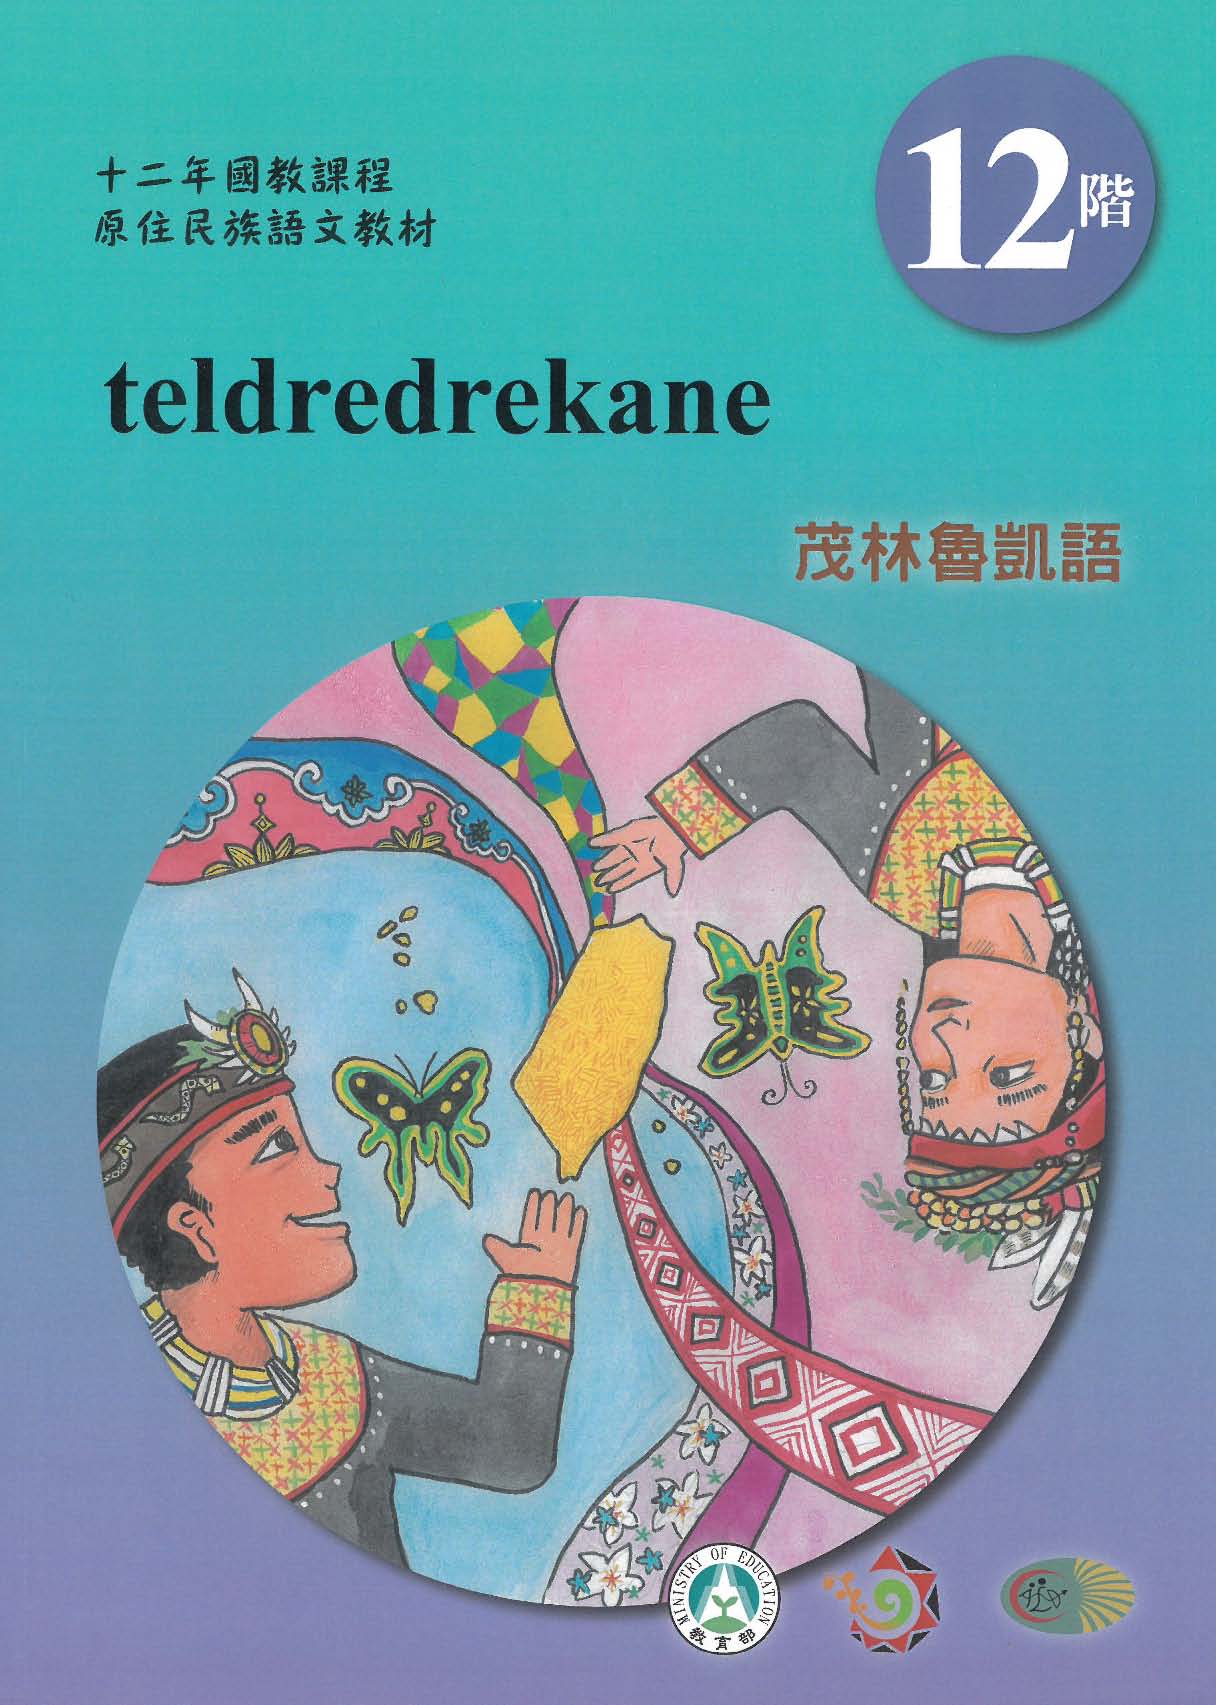 十二年國教原住民族語文教材 茂林魯凱語 學習手冊 第12階